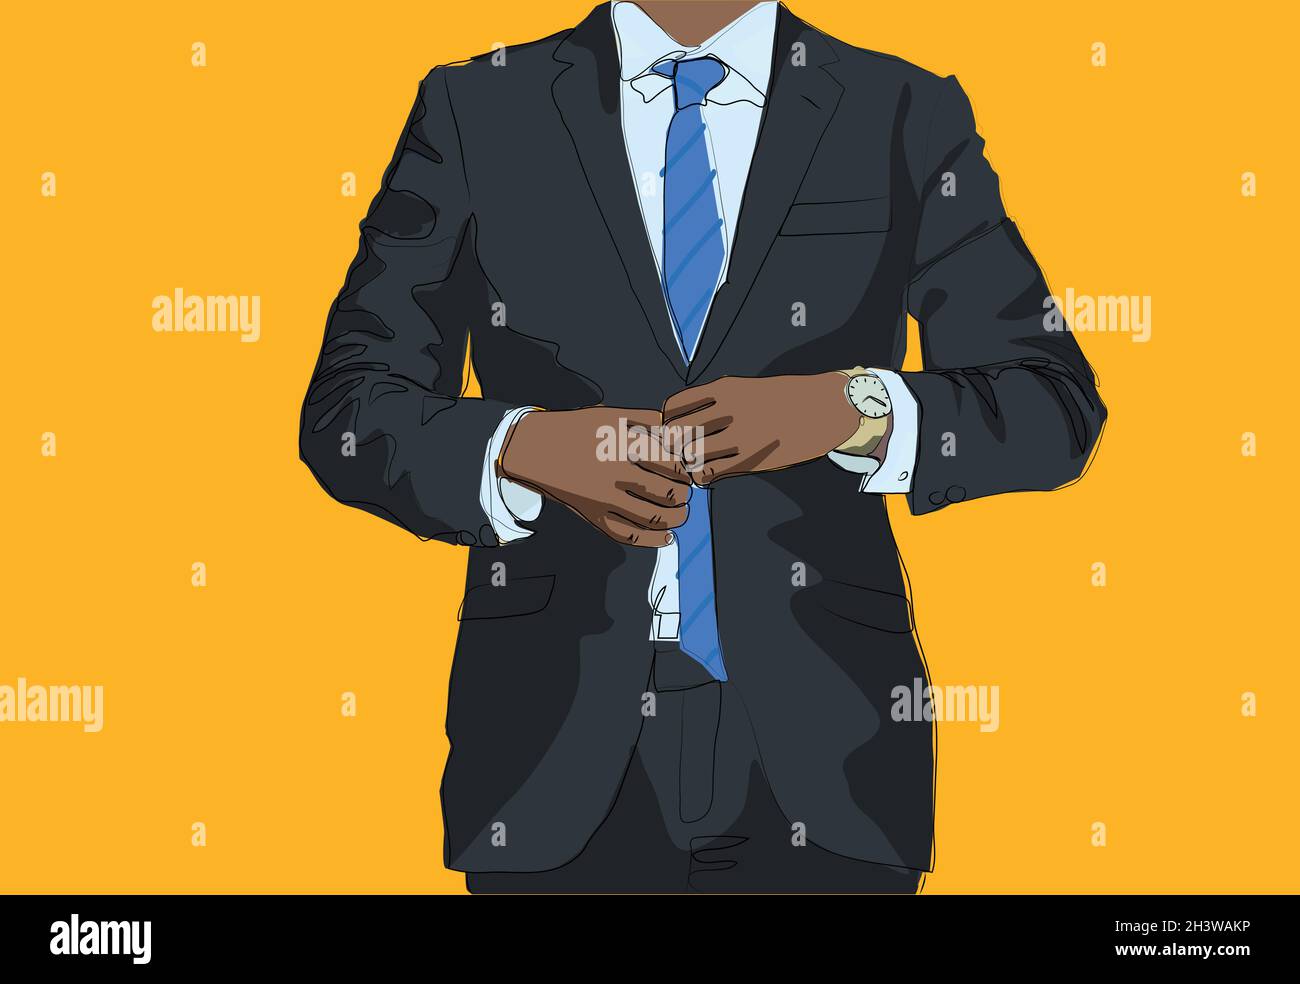 illustrazione di uomo d'affari nero vestito - disegno di modo maschile Foto Stock